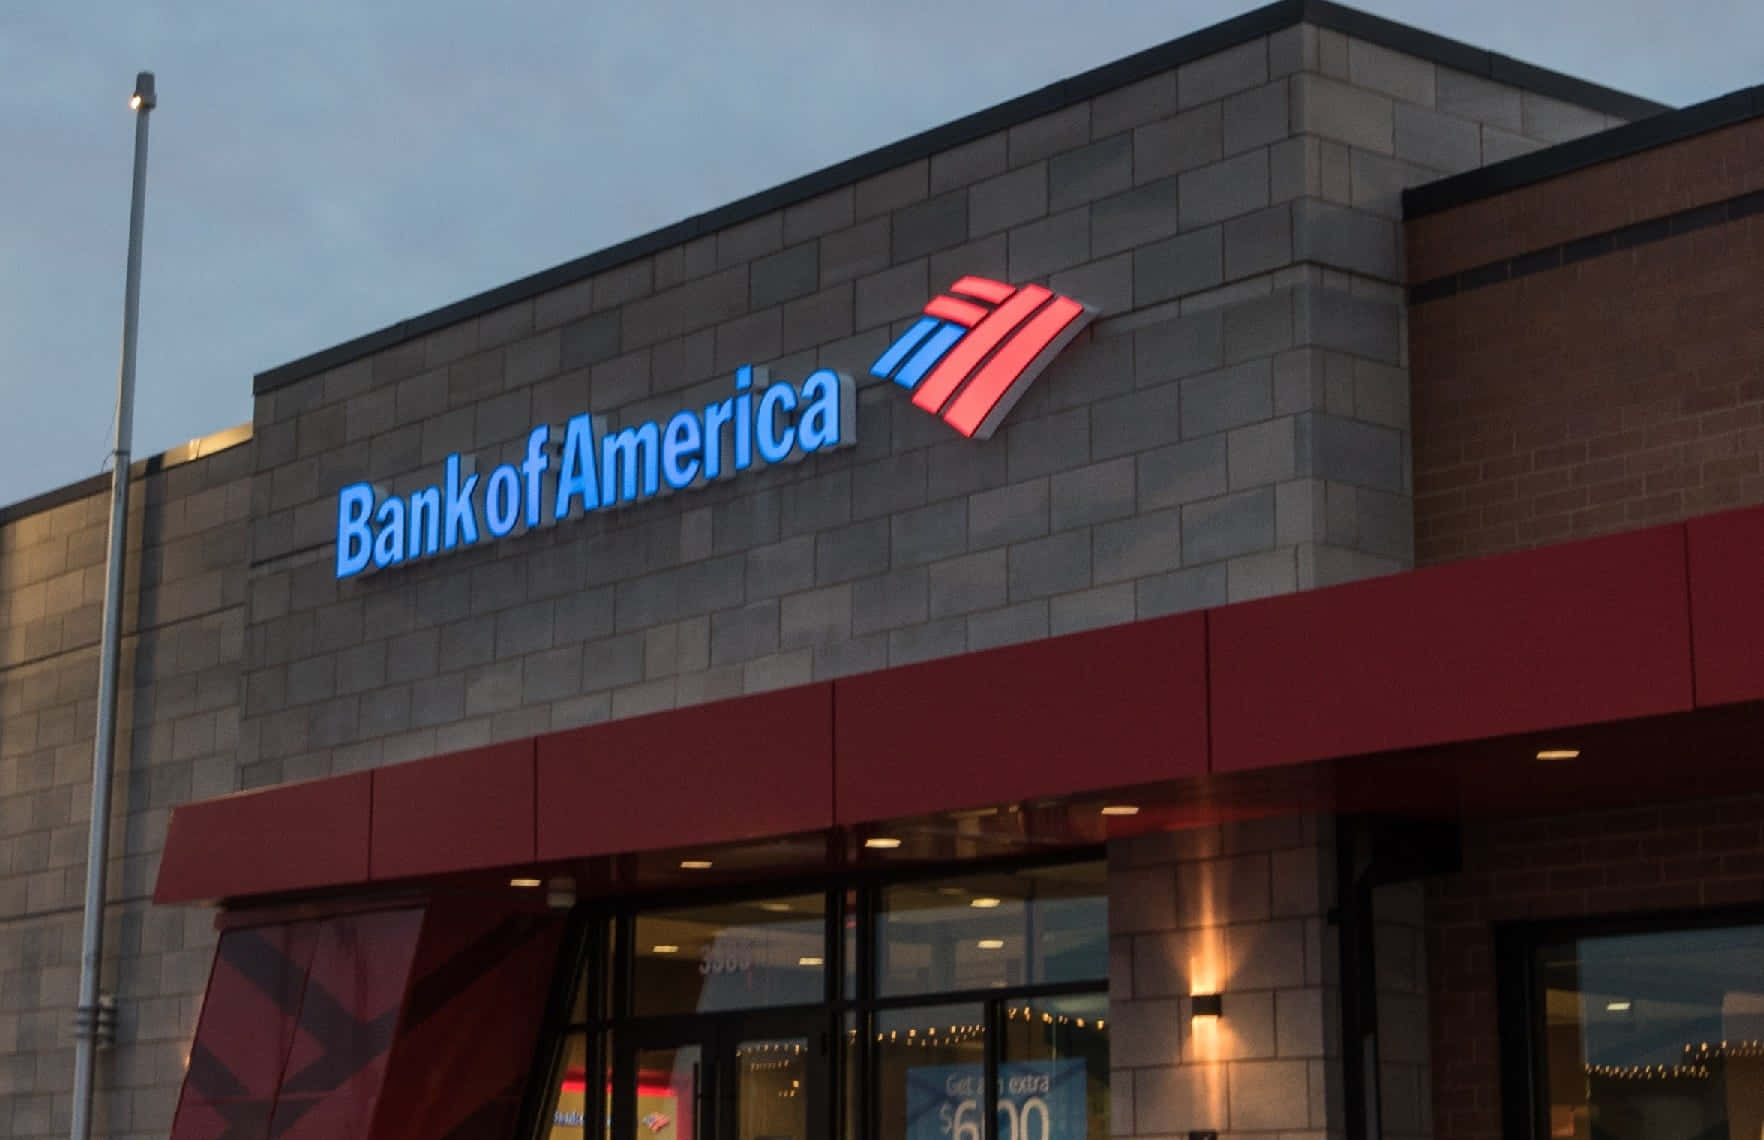 Bankof America: Investér I Din Fremtid.